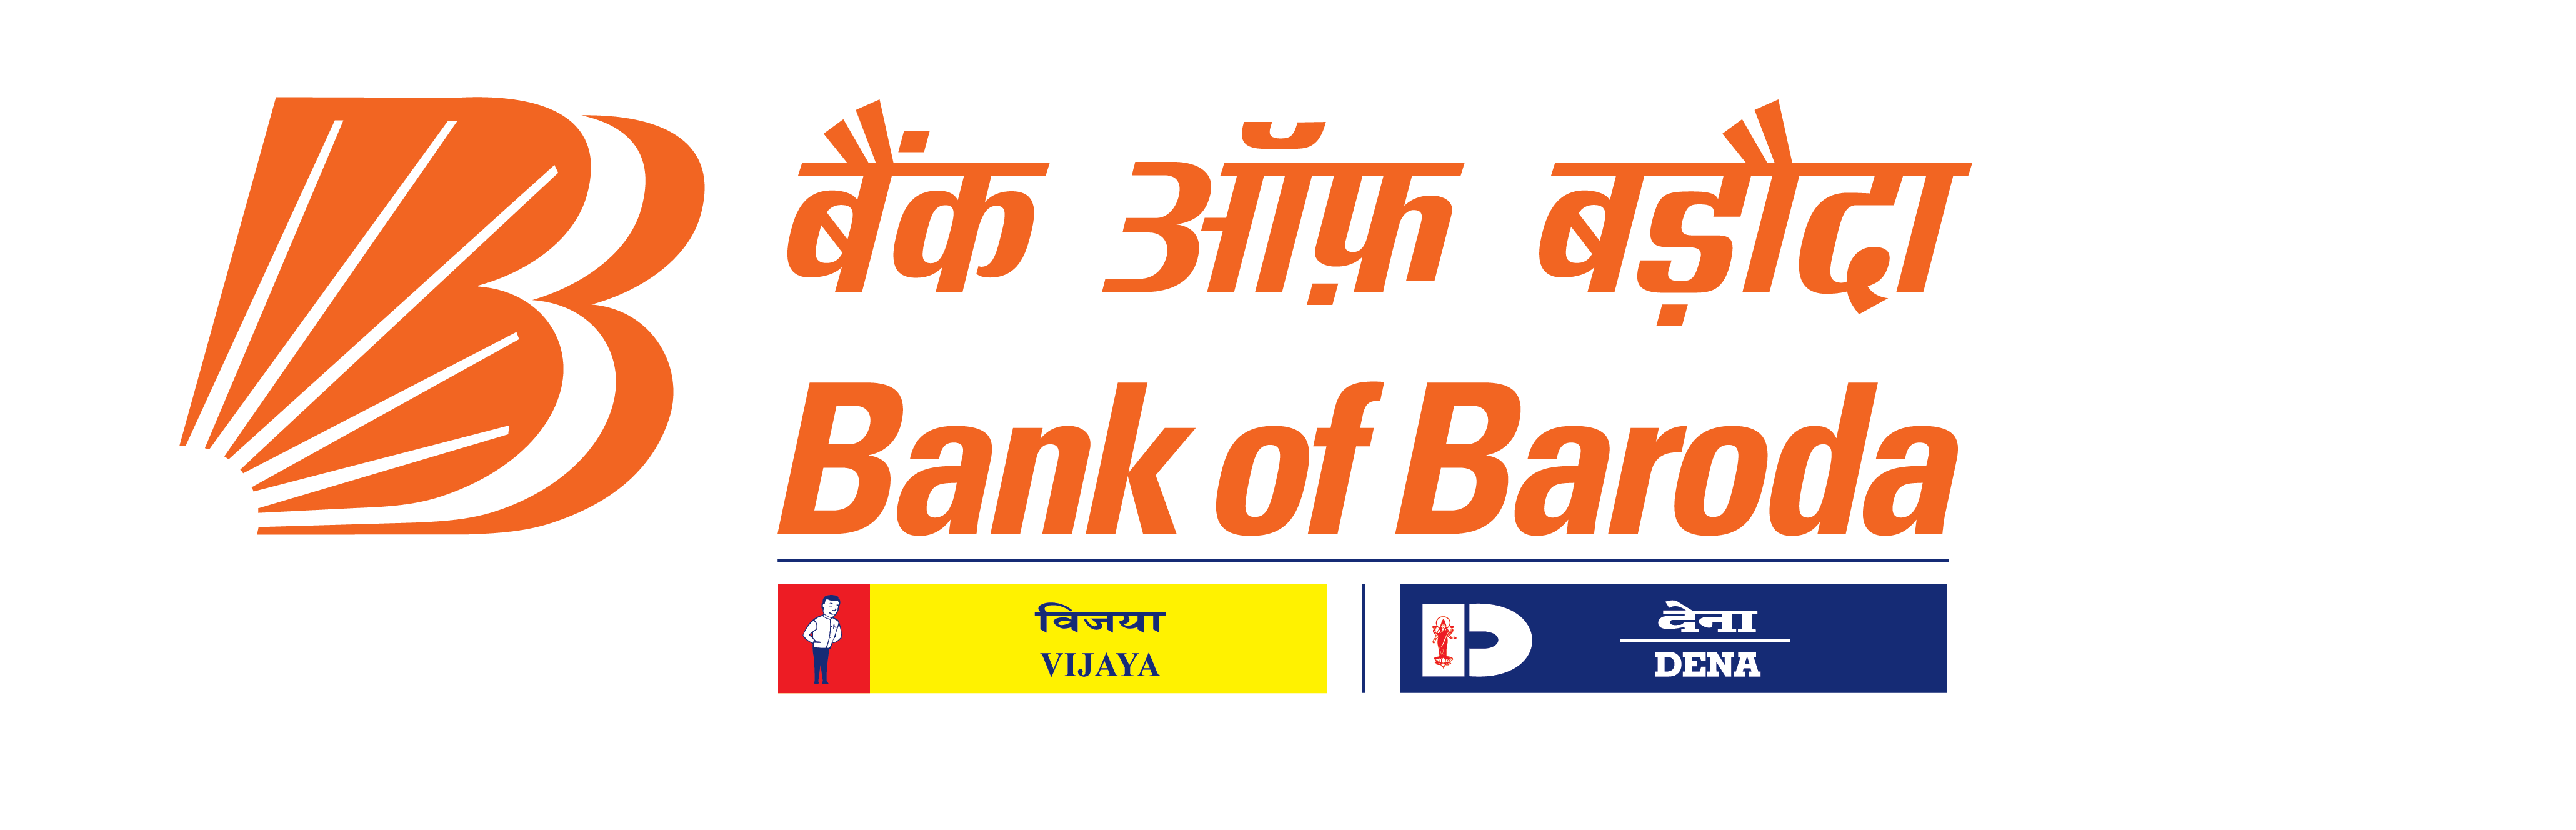 Bank of Baroda, India's International Bank